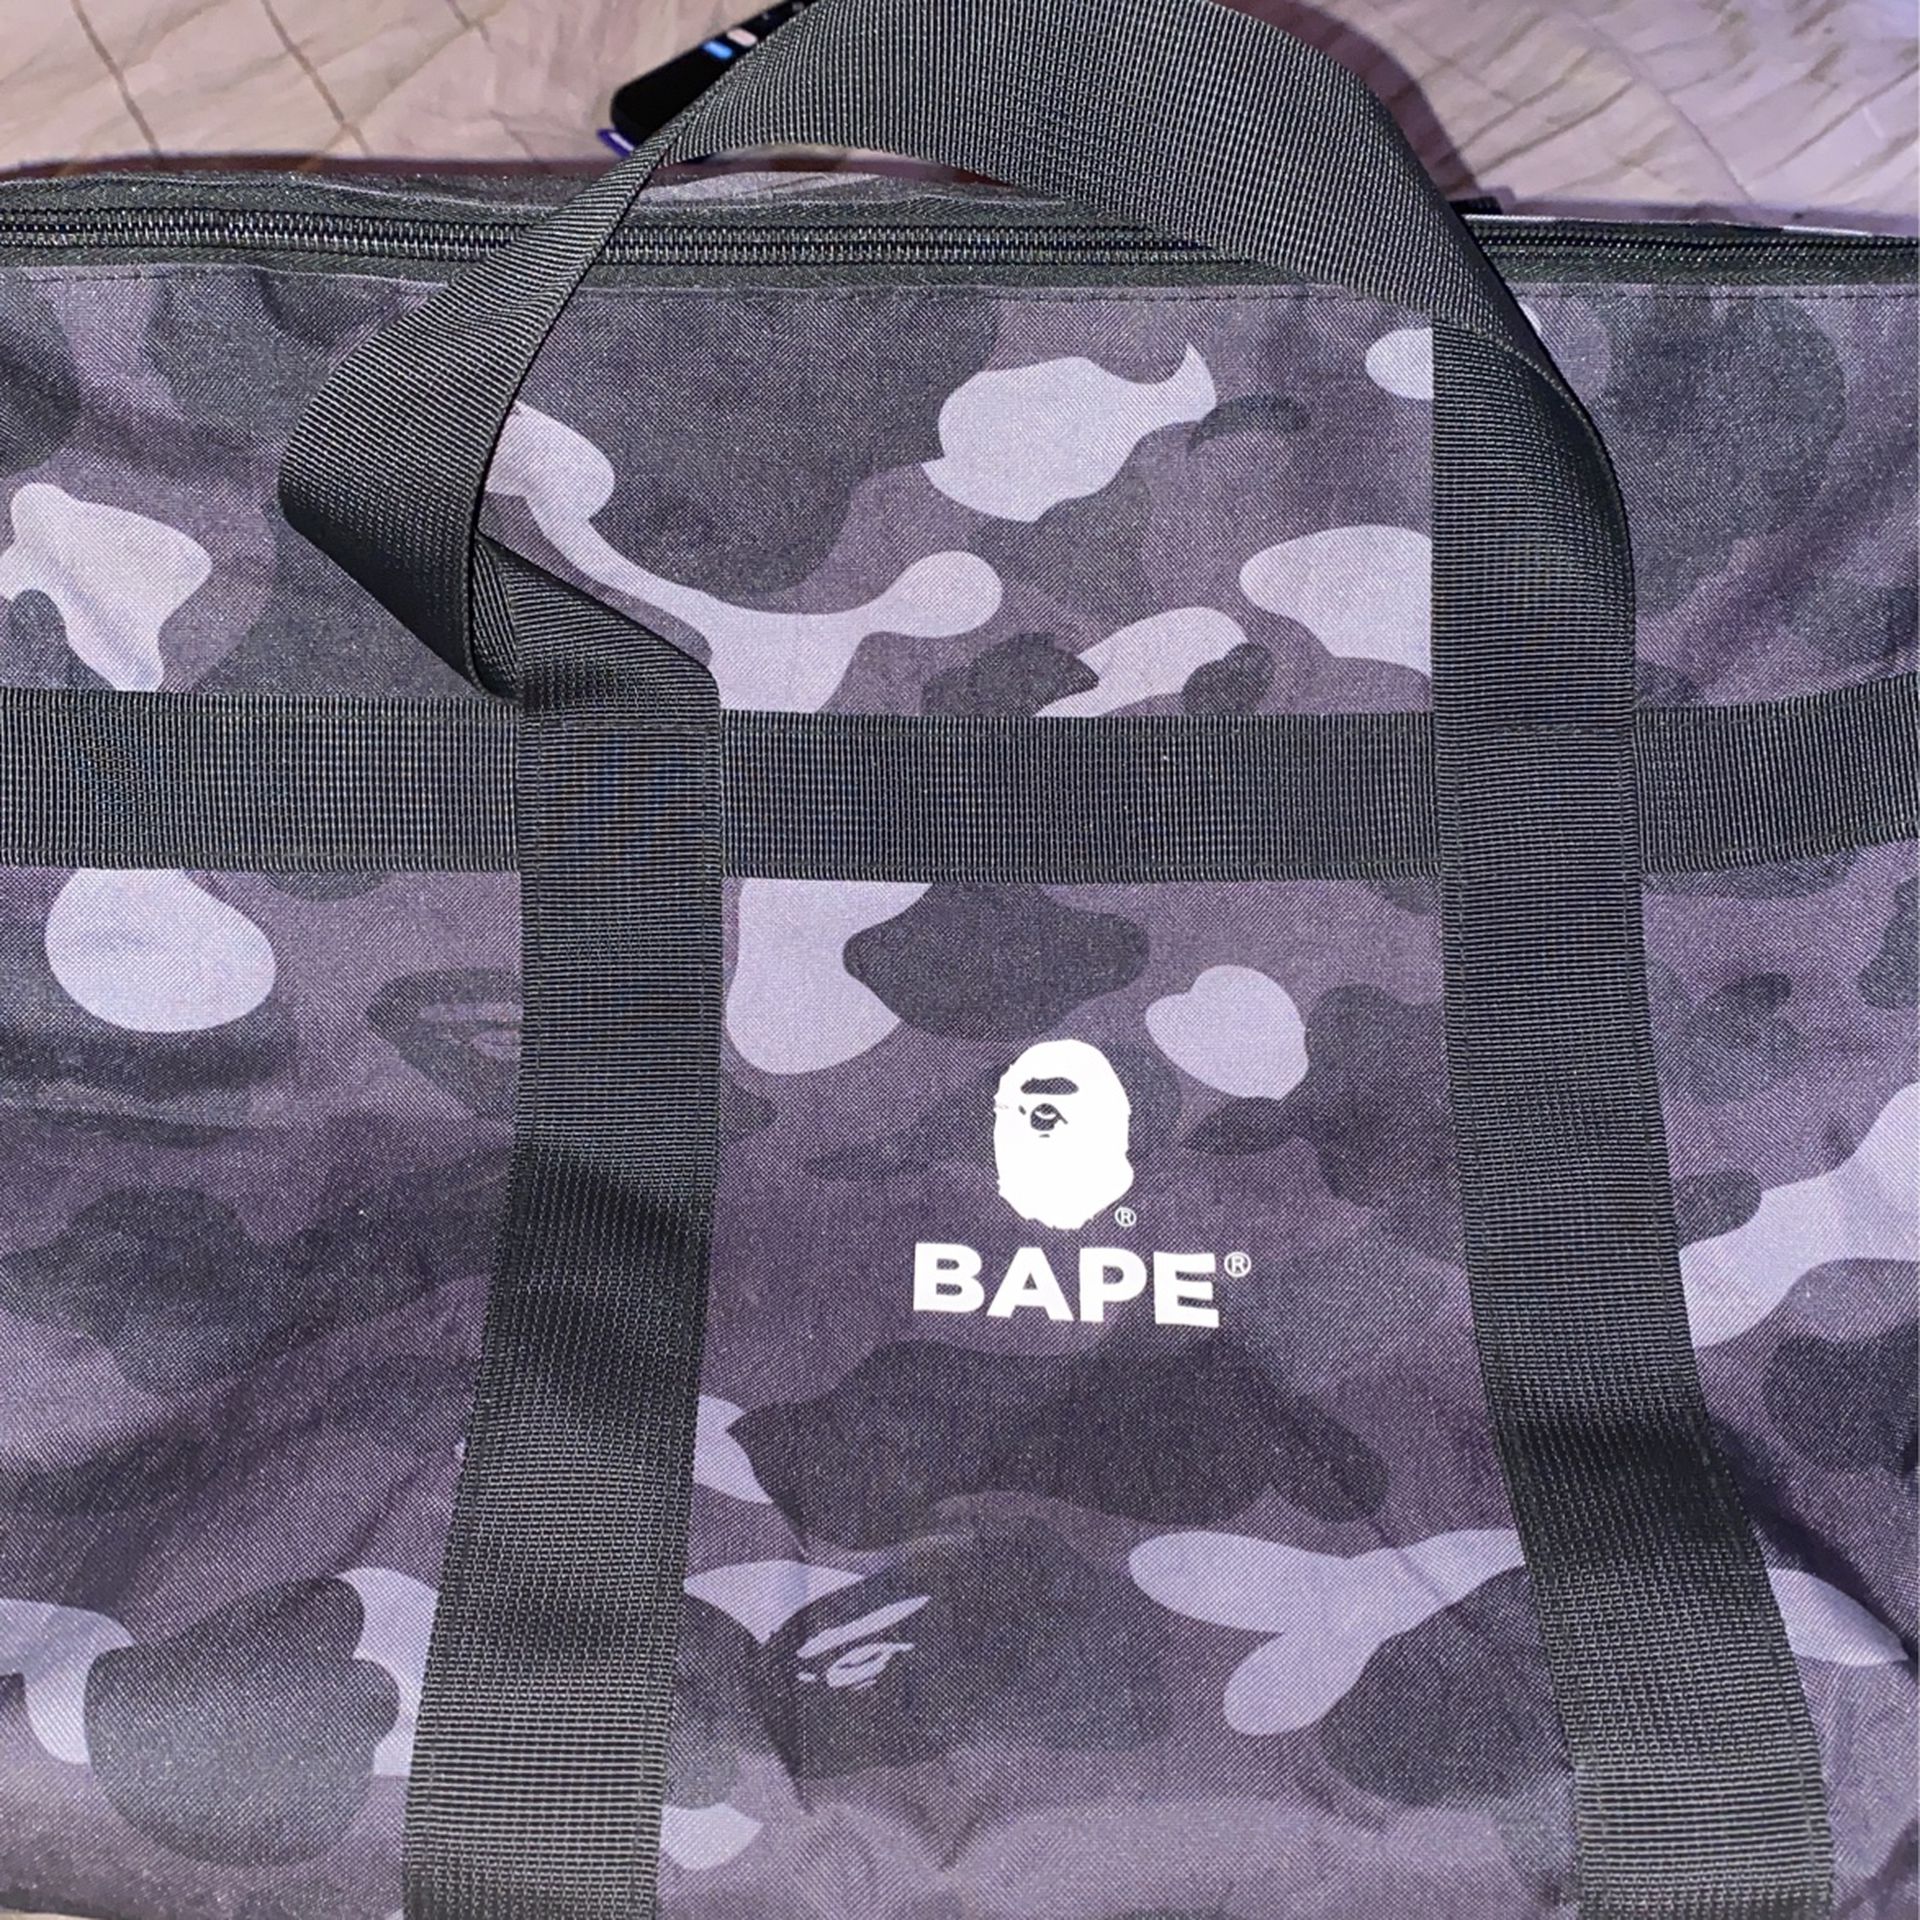 Bape Duffle Bag